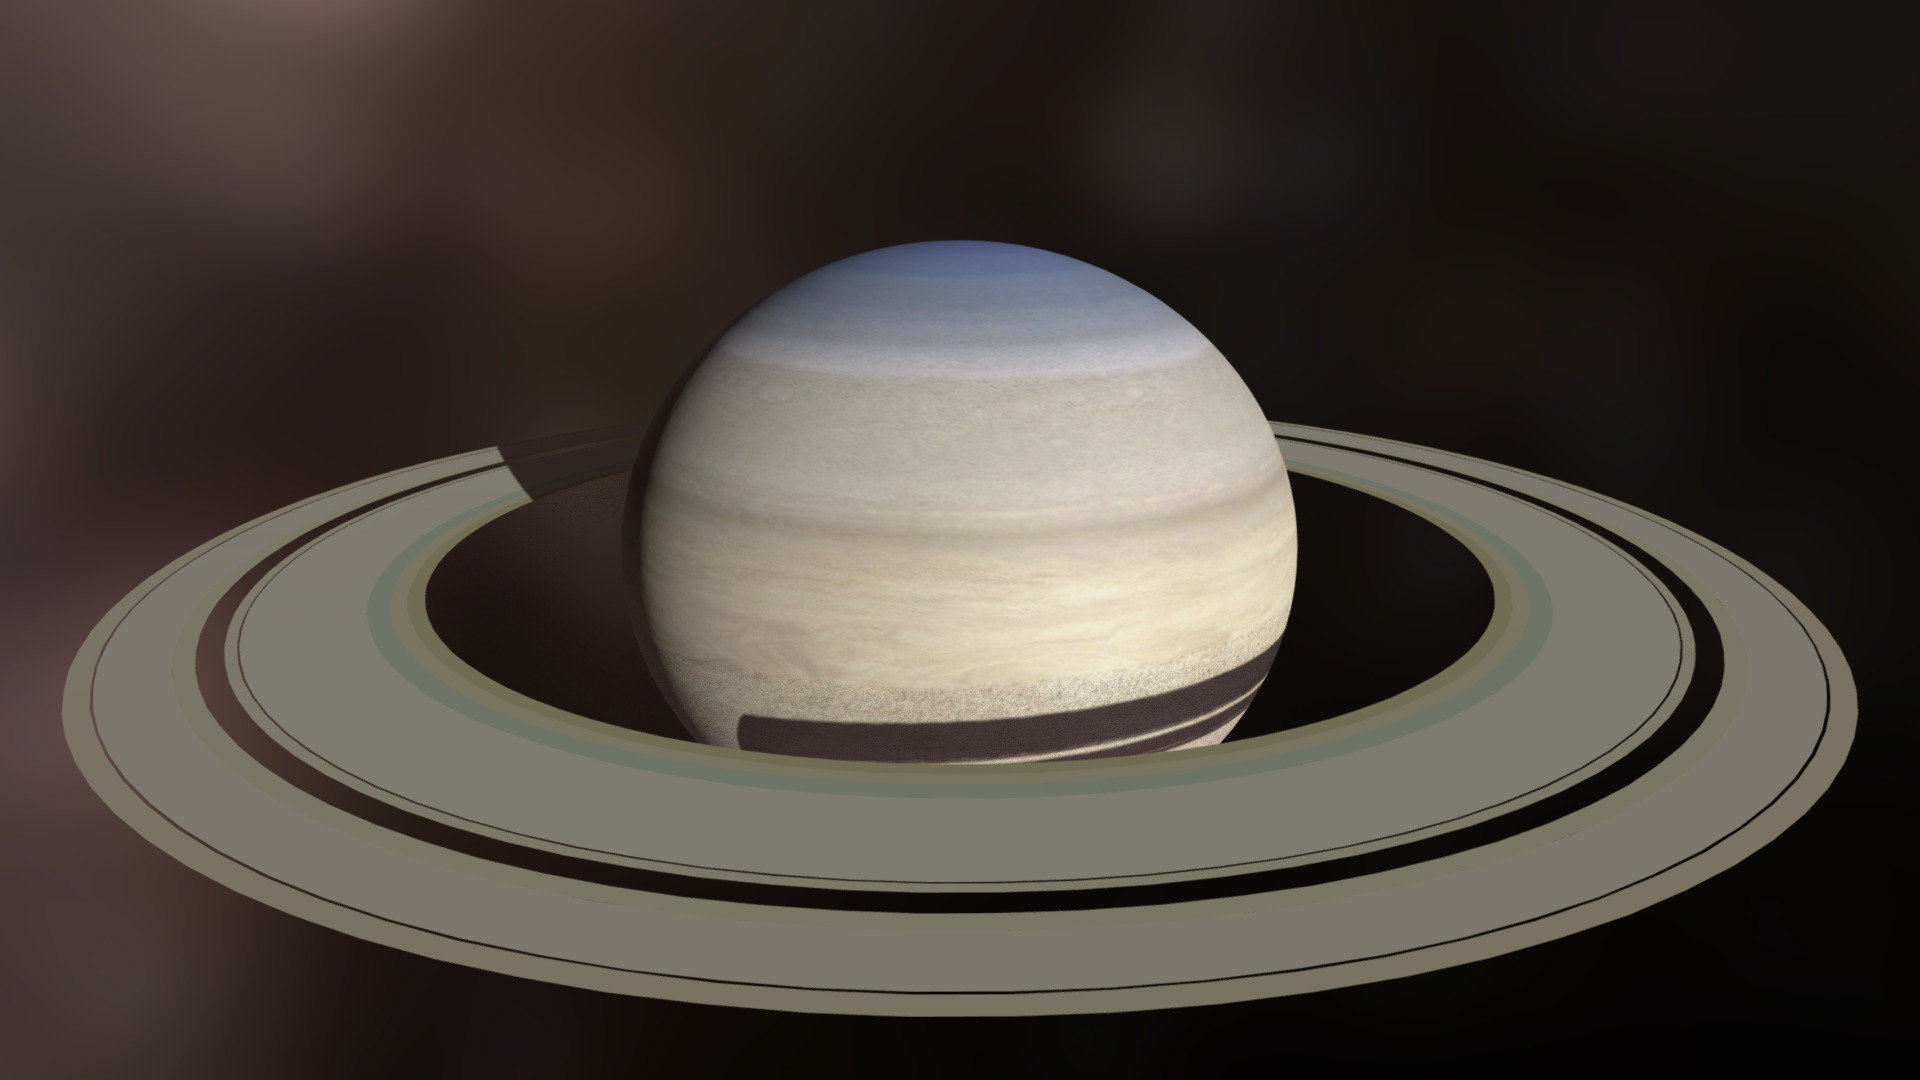 Modelo del Planeta Saturno - Saturno - Download Free 3D model by uperesito 3d model